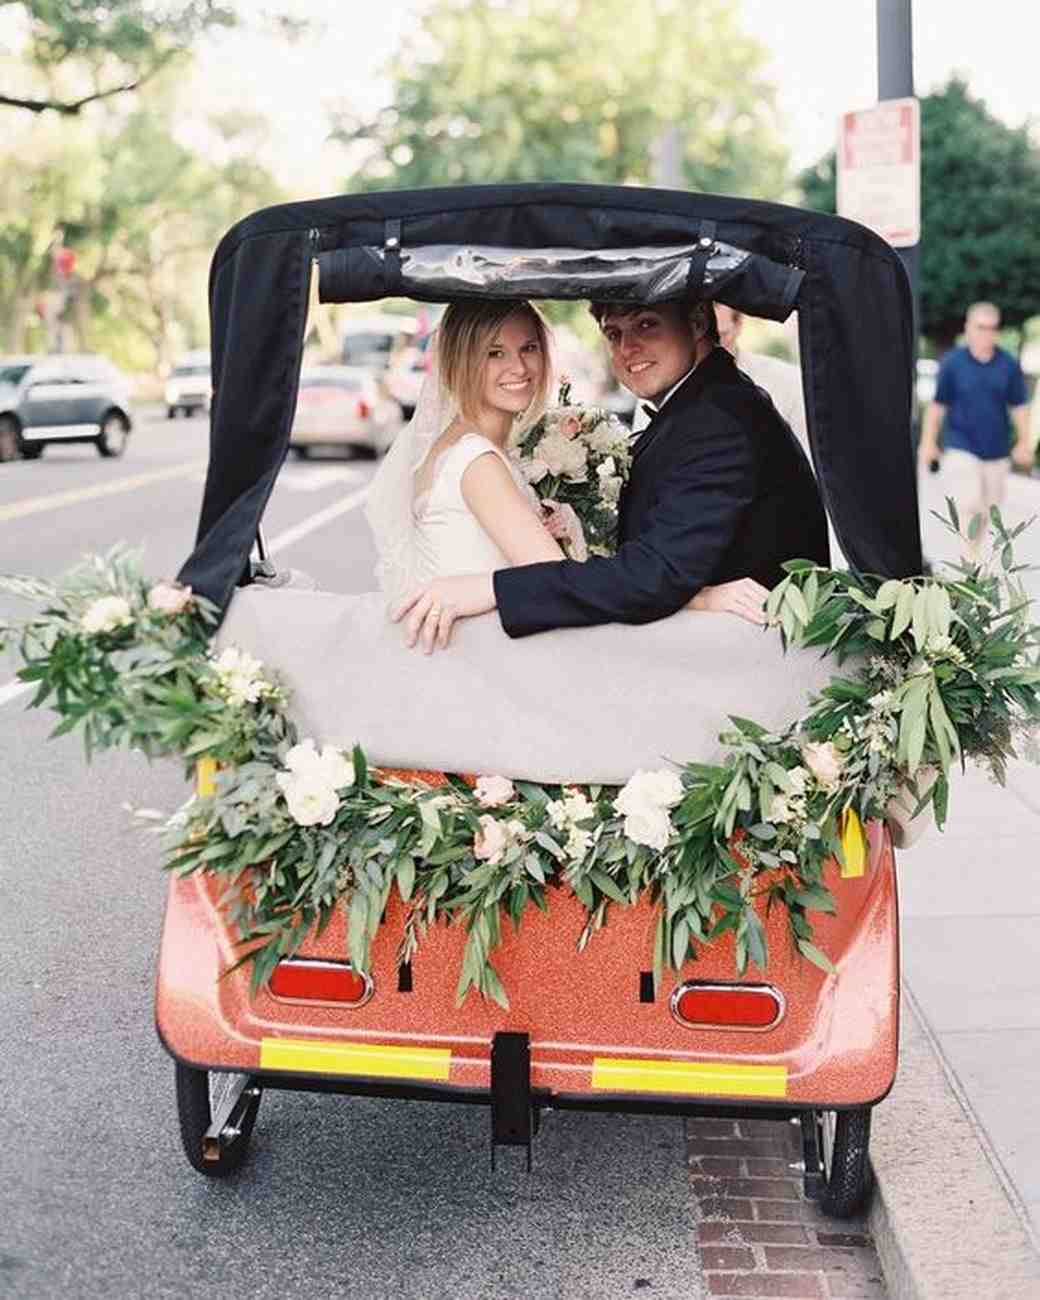 Wedding Getaway Car Ideas For Riding Away In Style Martha Stewart